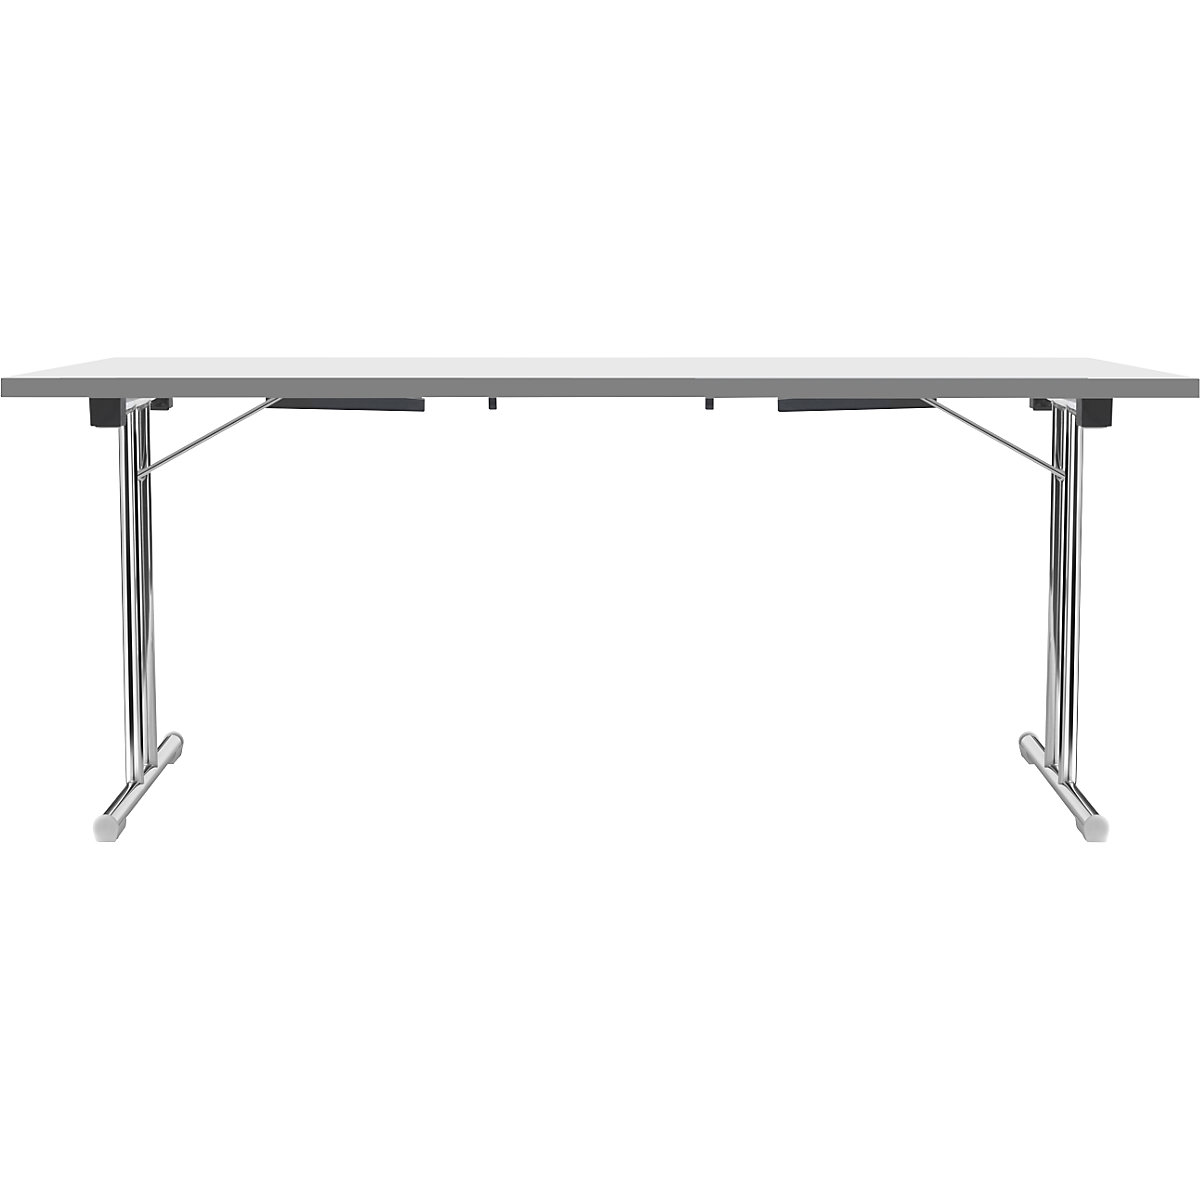 Inklapbare tafel met dubbel T-vormig onderstel, frame van staalbuis, verchroomd, wit/antraciet, b x d = 1800 x 800 mm-16